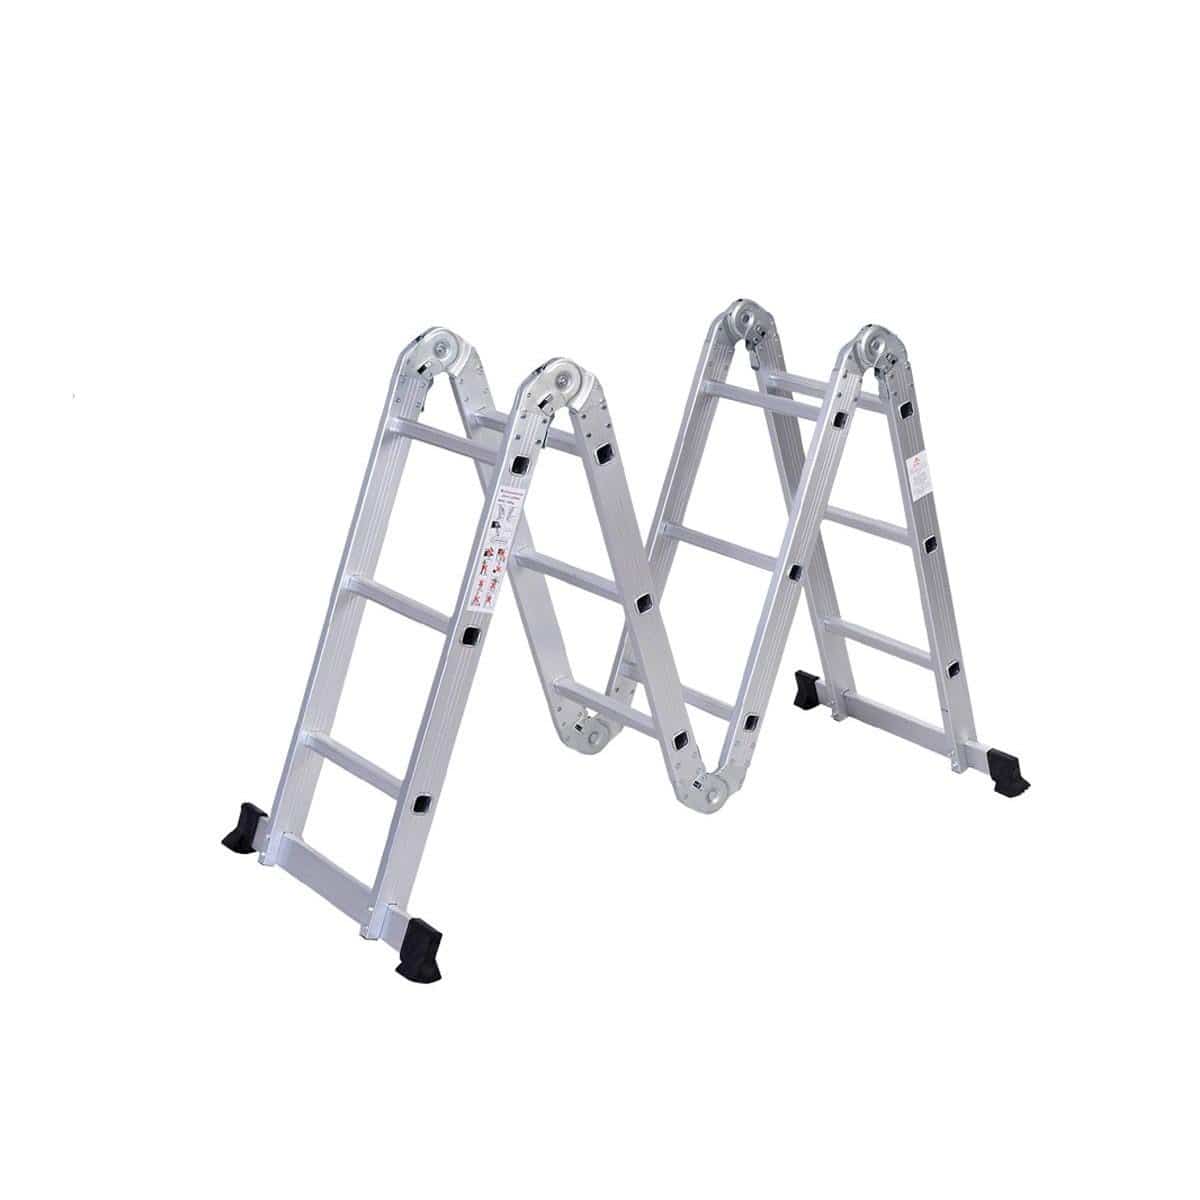 SUMO KING Heavy Duty Multi Purpose Ladder Flat Foot (20 STEPS)